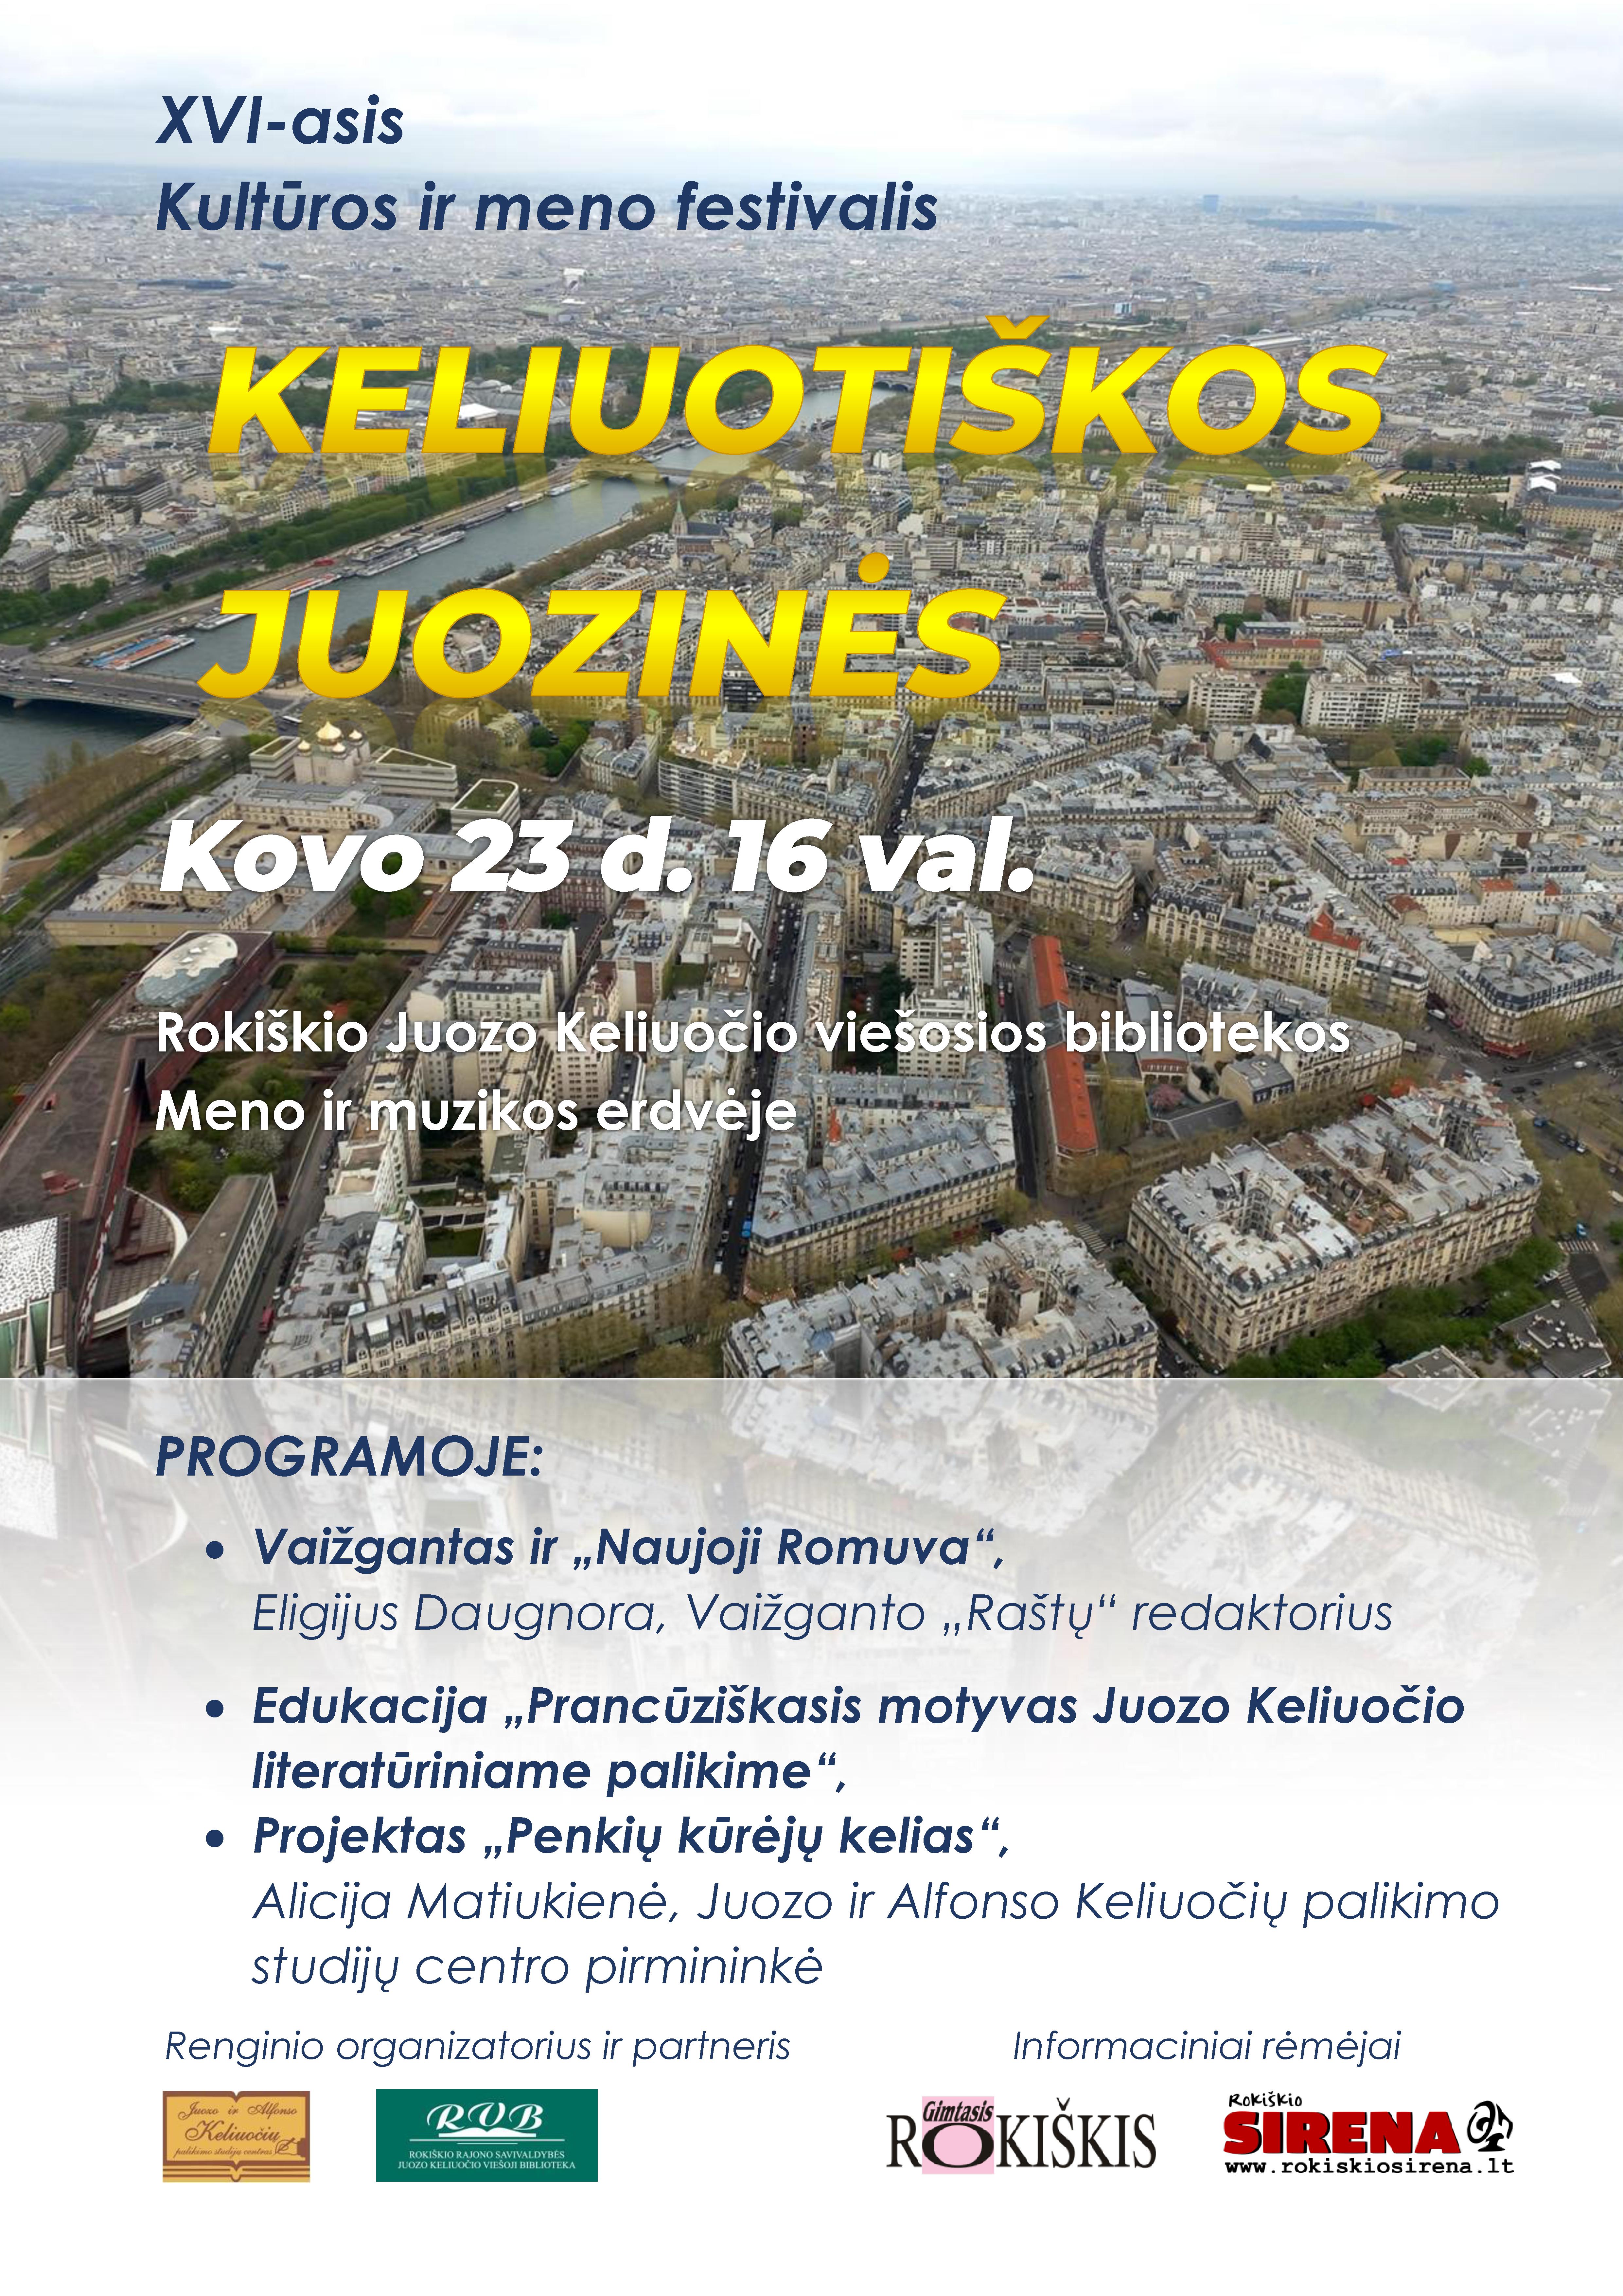 XVI-asis kultūros ir meno festivalis ,,Keliuotiškos Juozinės” Rokiškio Juozo Keliuočio viešosios bibliotekos Meno ir muzikos erdvėje.